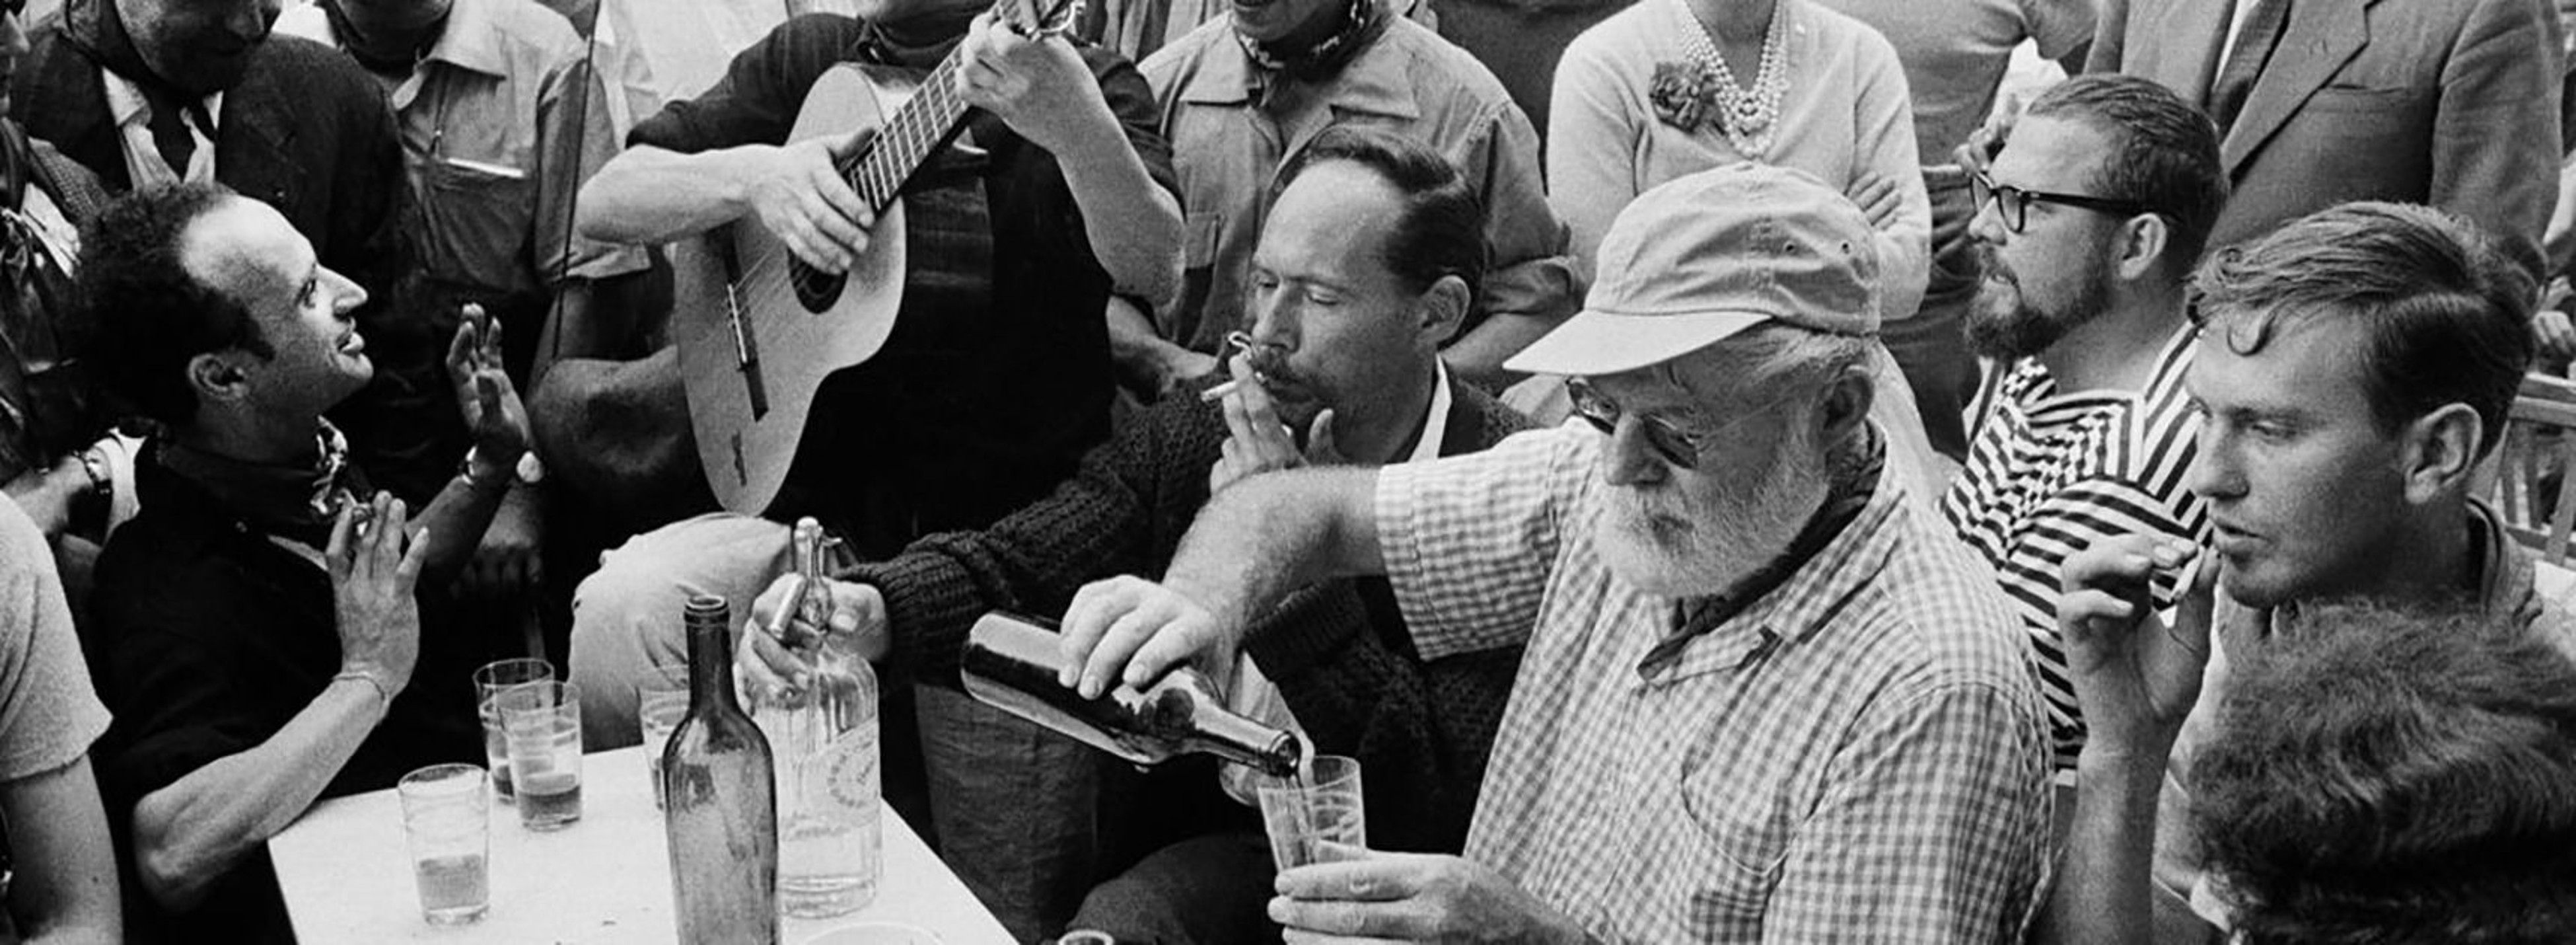 100 años de la primera vez de Hemingway en España: "No nací aquí, pero eso no fue culpa mía"